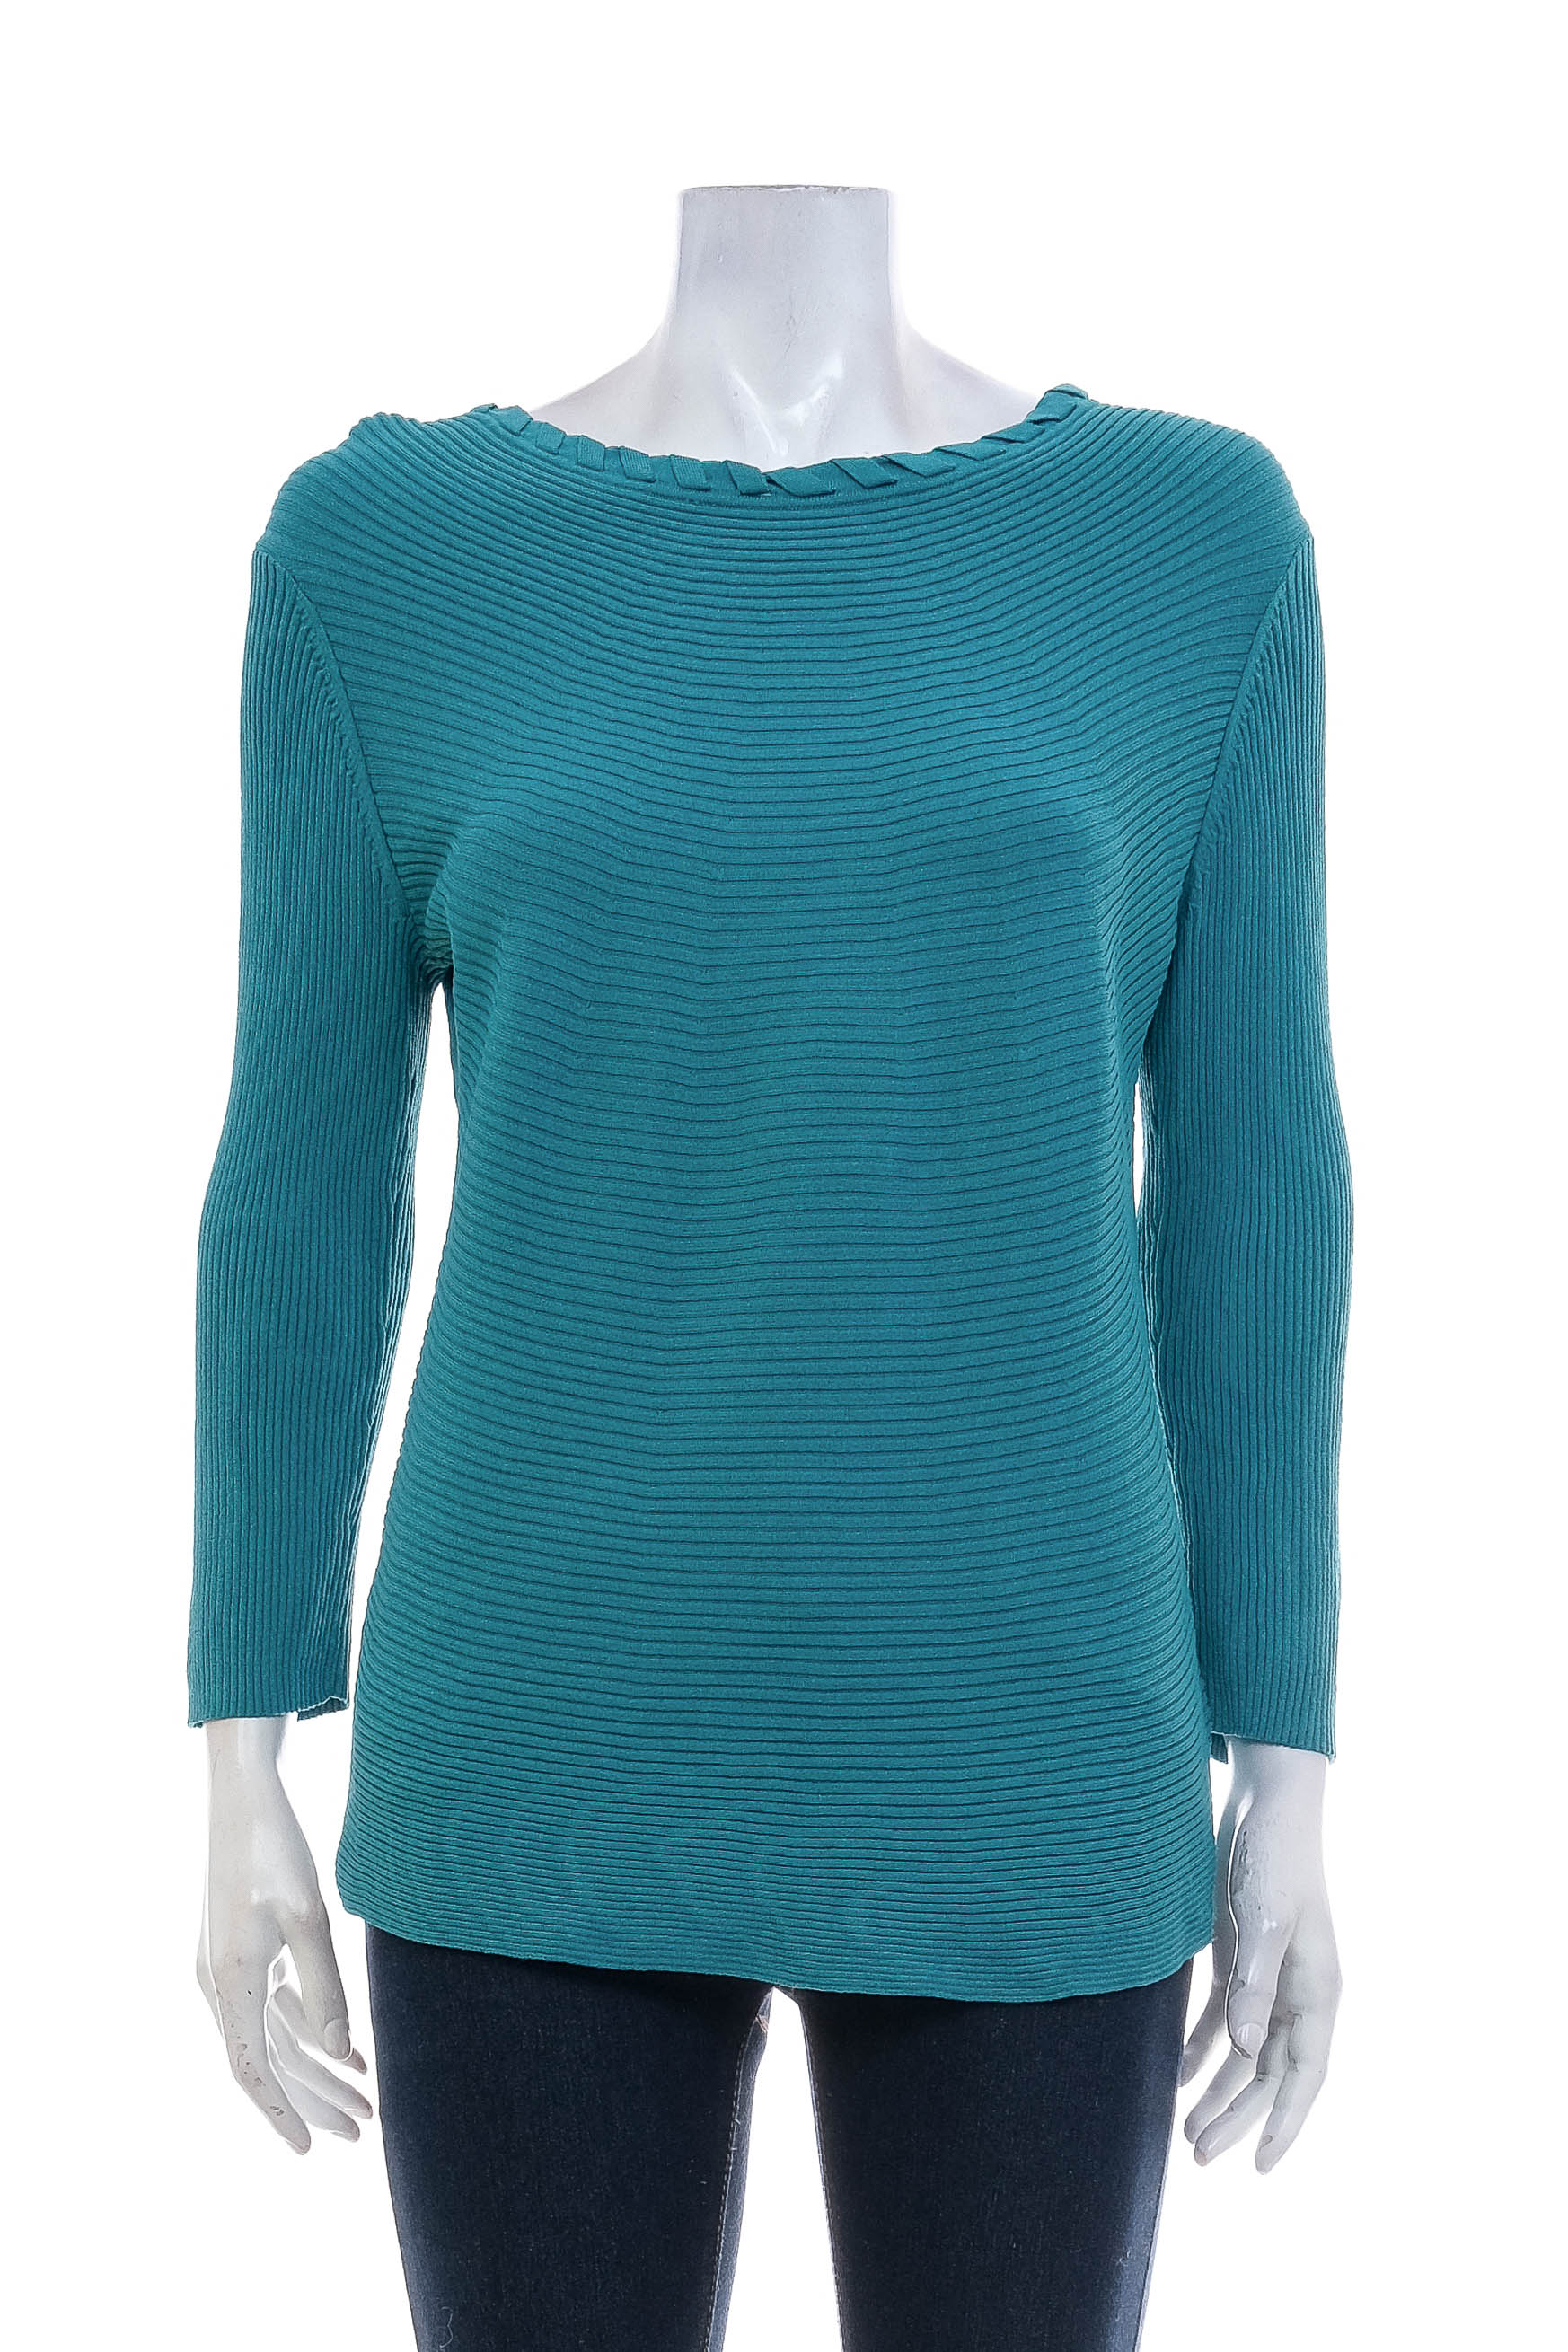 Women's sweater - Mayerline - 0